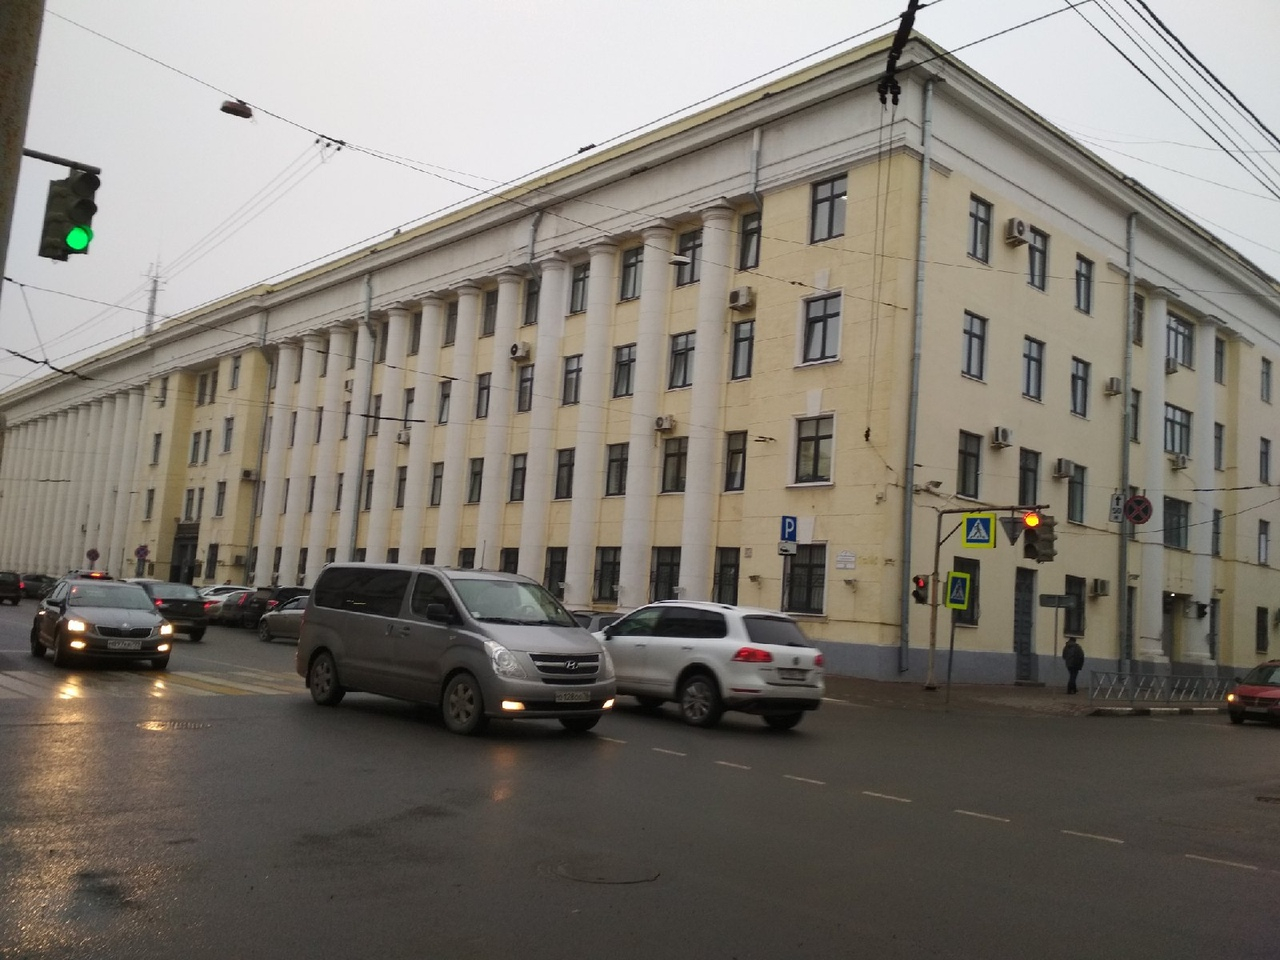 Двух полицейских с COVID-19 госпитализировали в инфекционную больницу в Ярославле